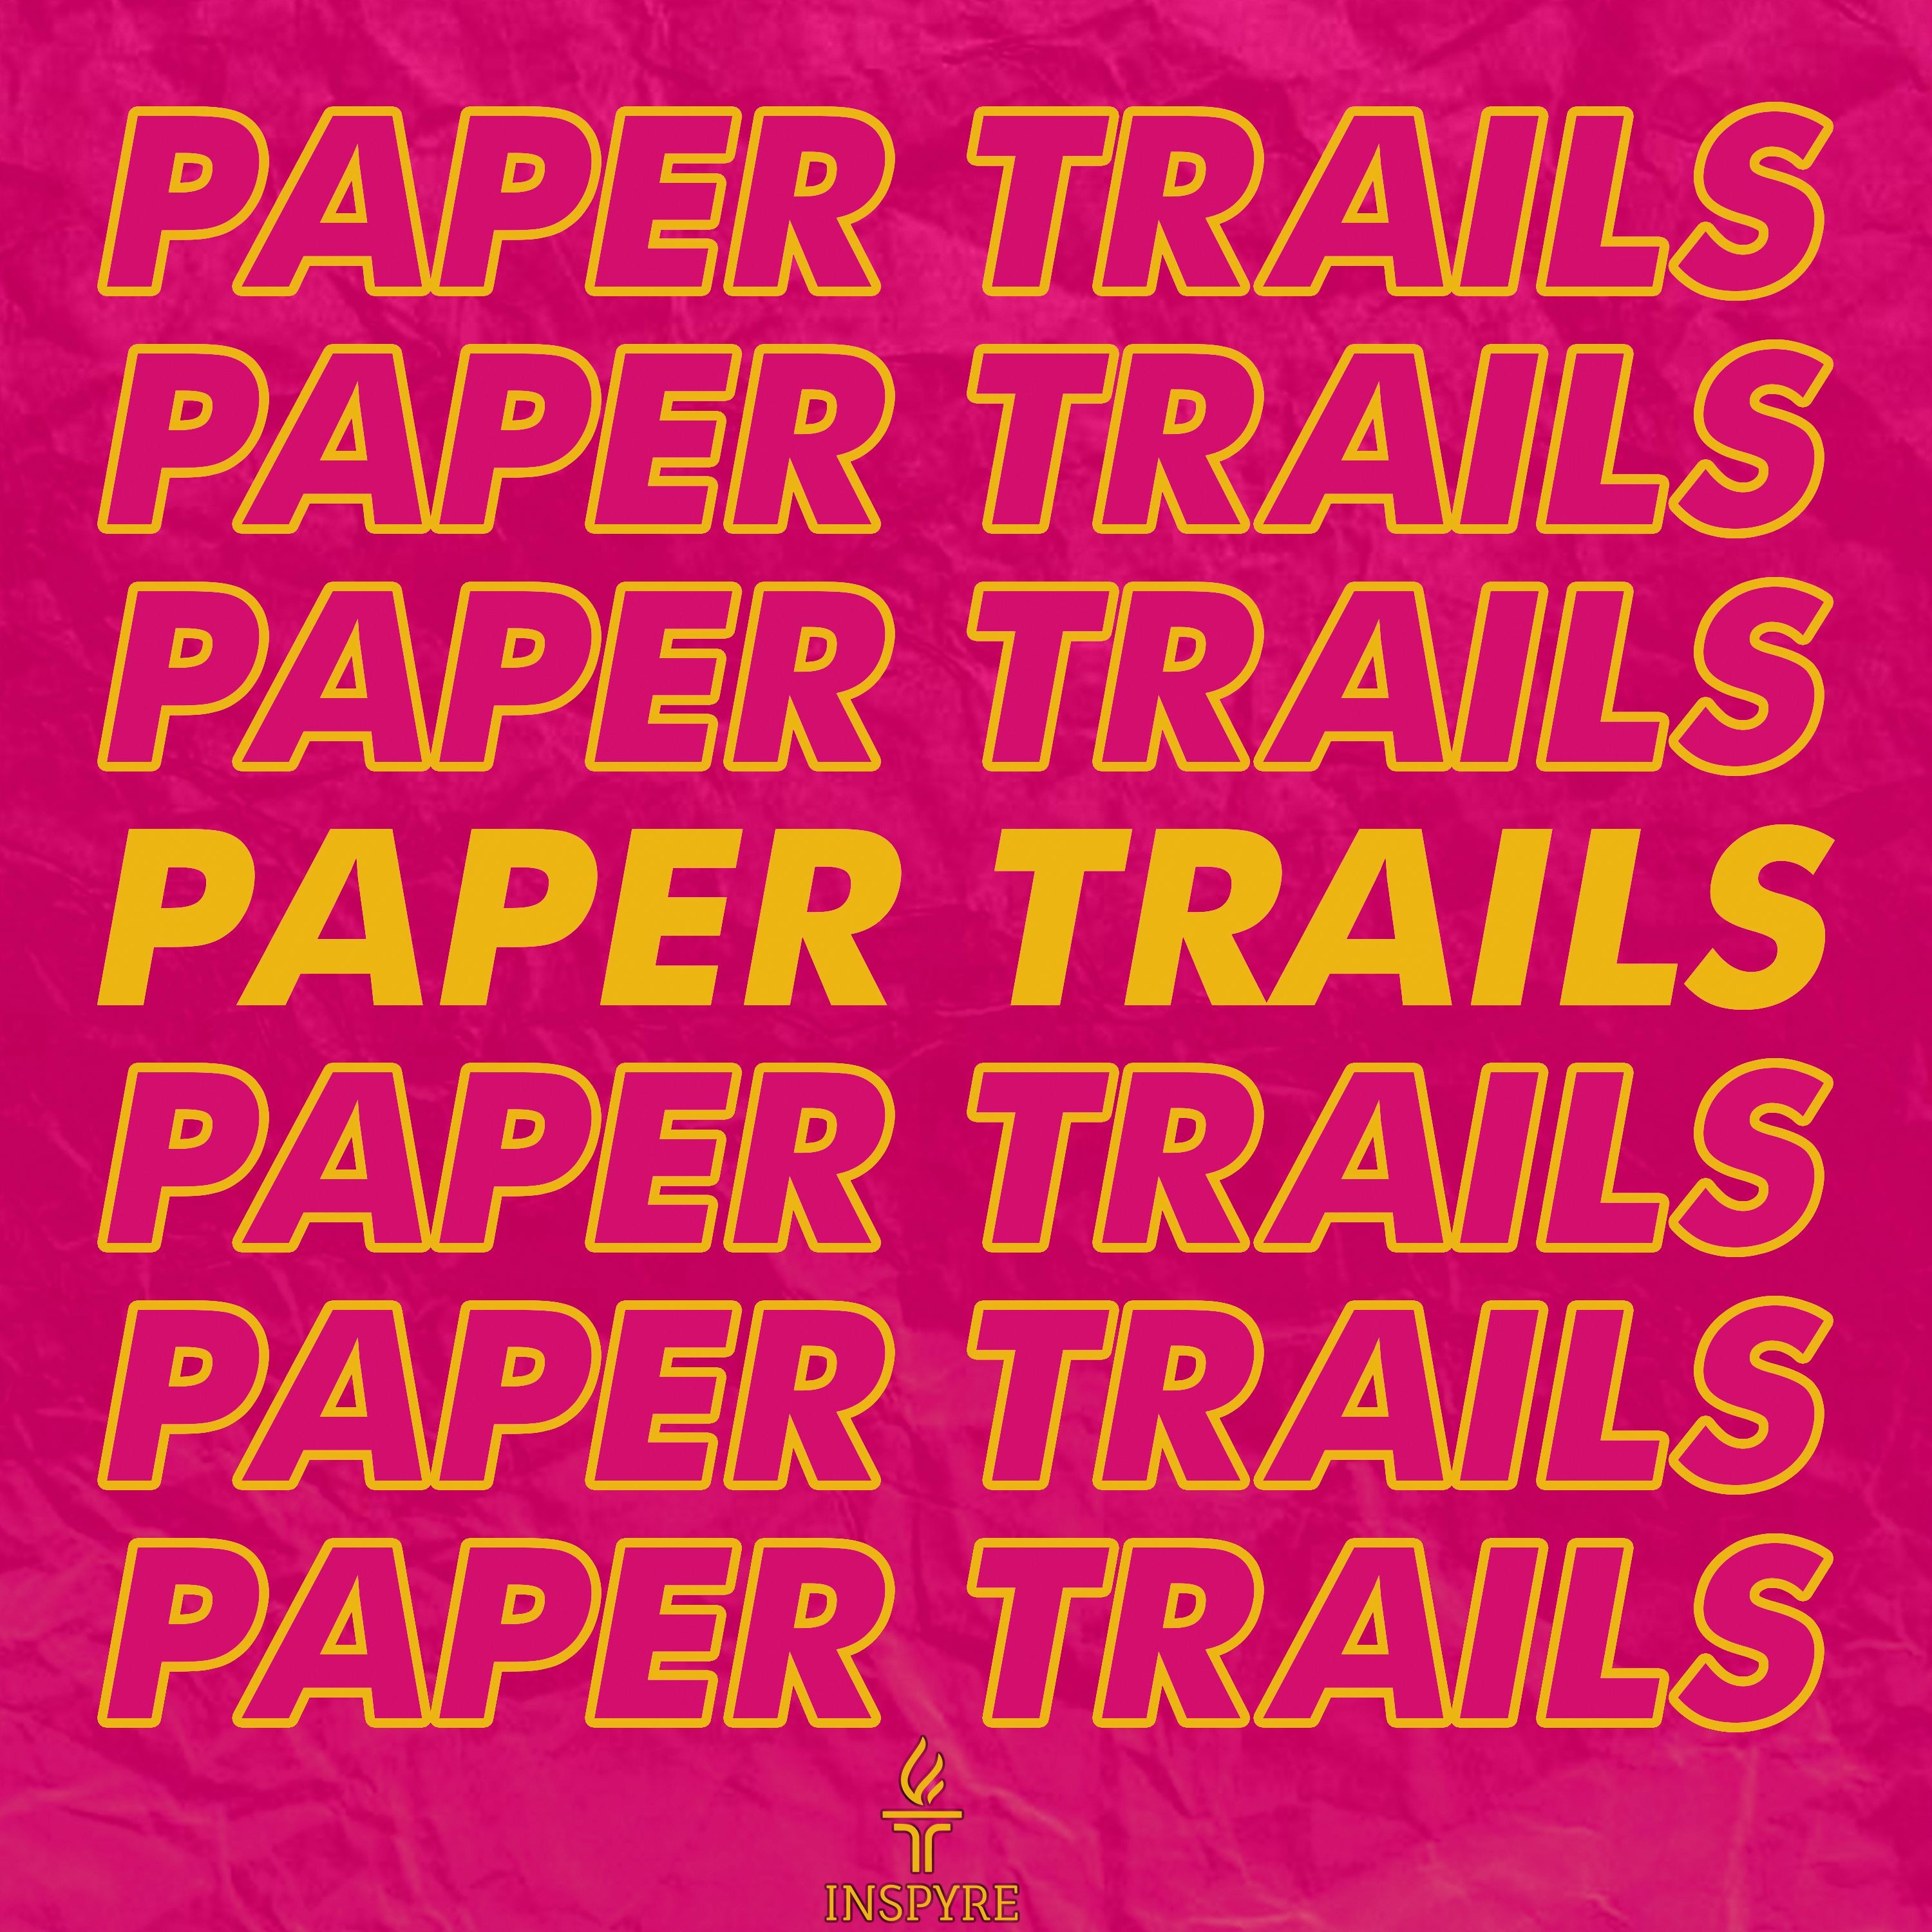 Paper Trails - Season 3 Episode 3: Sara Jafari - People Change